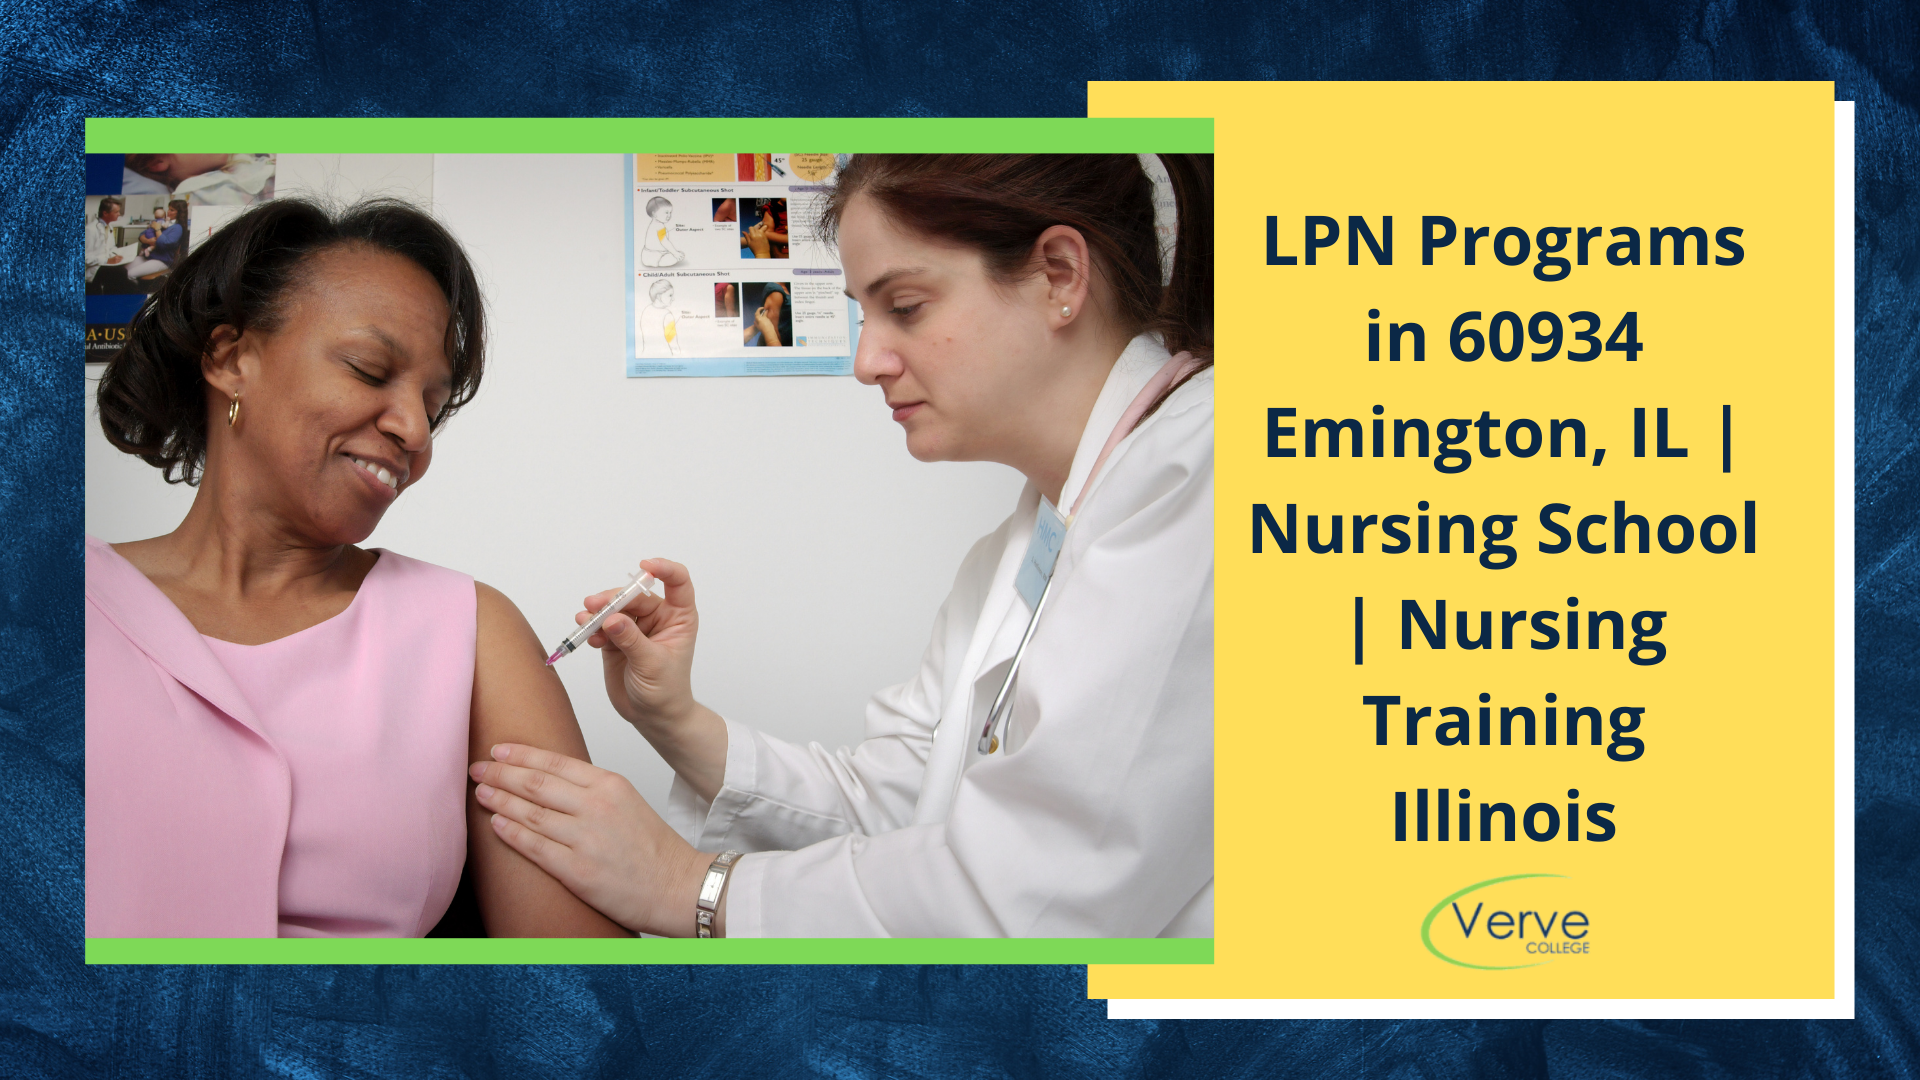 LPN Programs in 60934 Emington, IL | Nursing School | Nursing Training Illinois